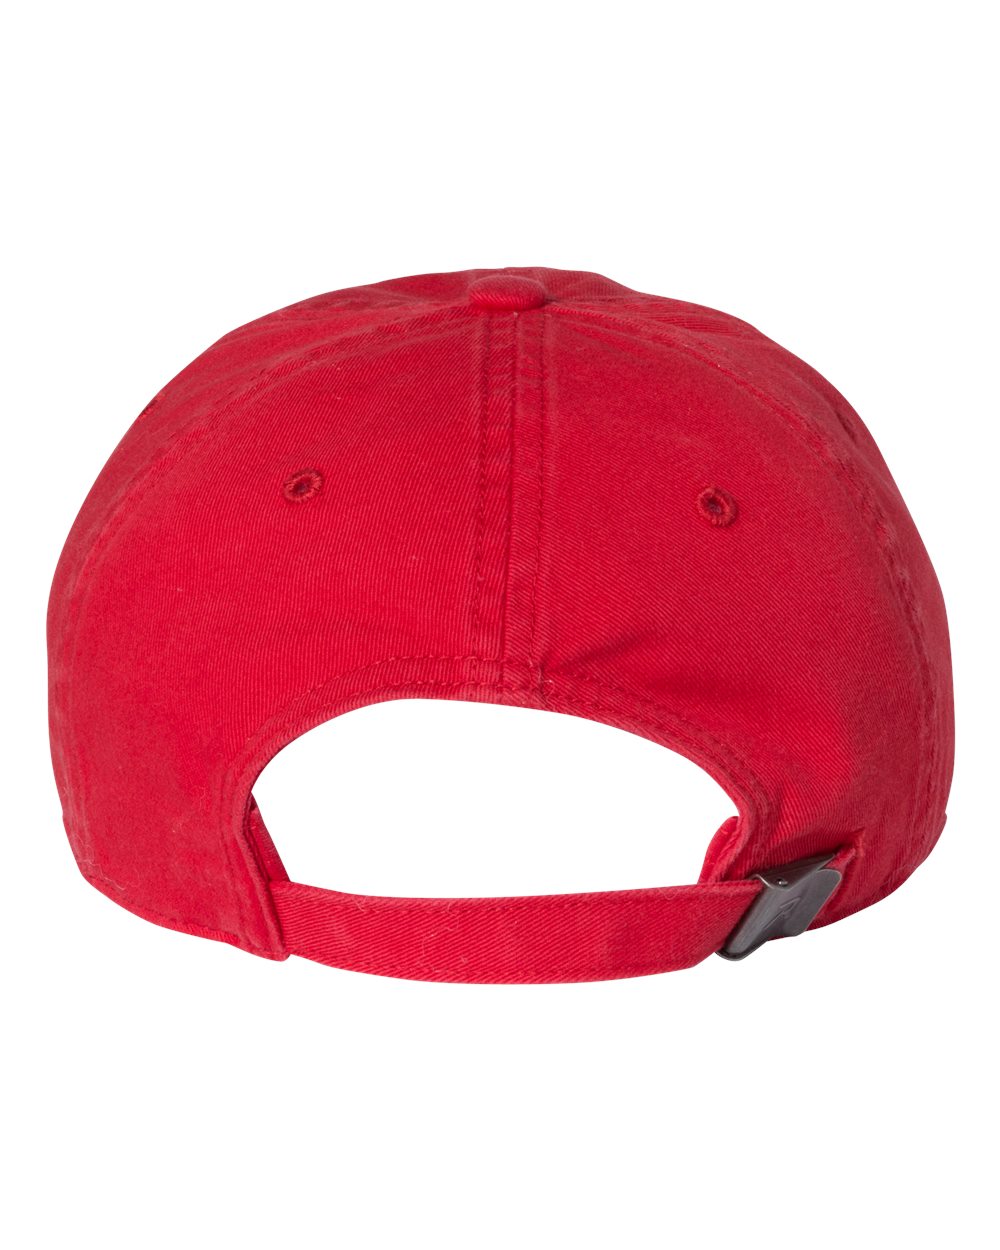 Richardson-Washed Customized Chino Caps, Red